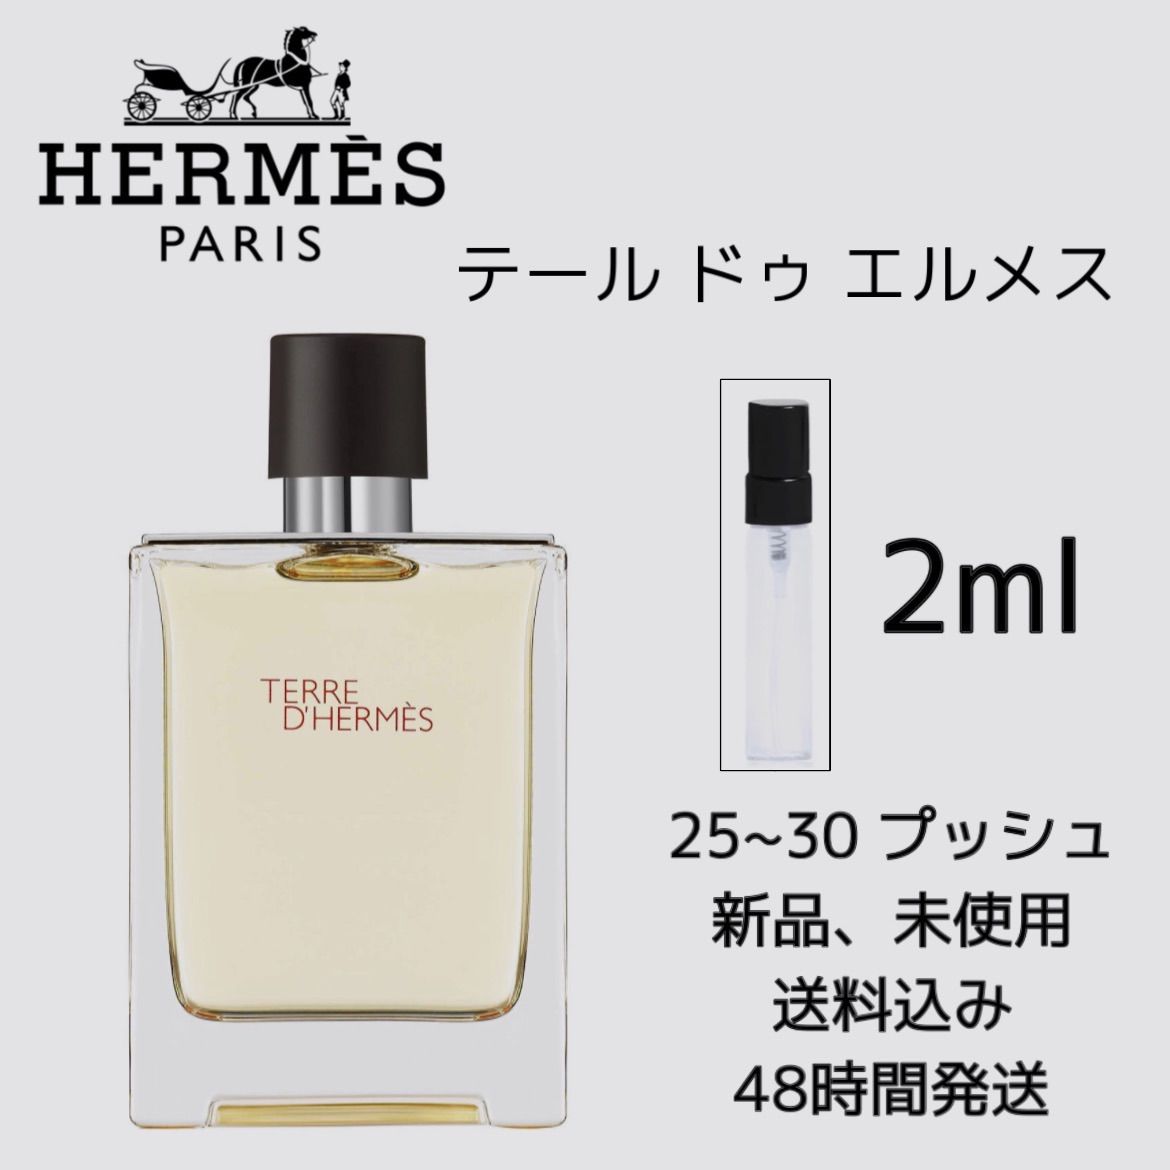 エルメス 香水 セット内容量2ml - ユニセックス